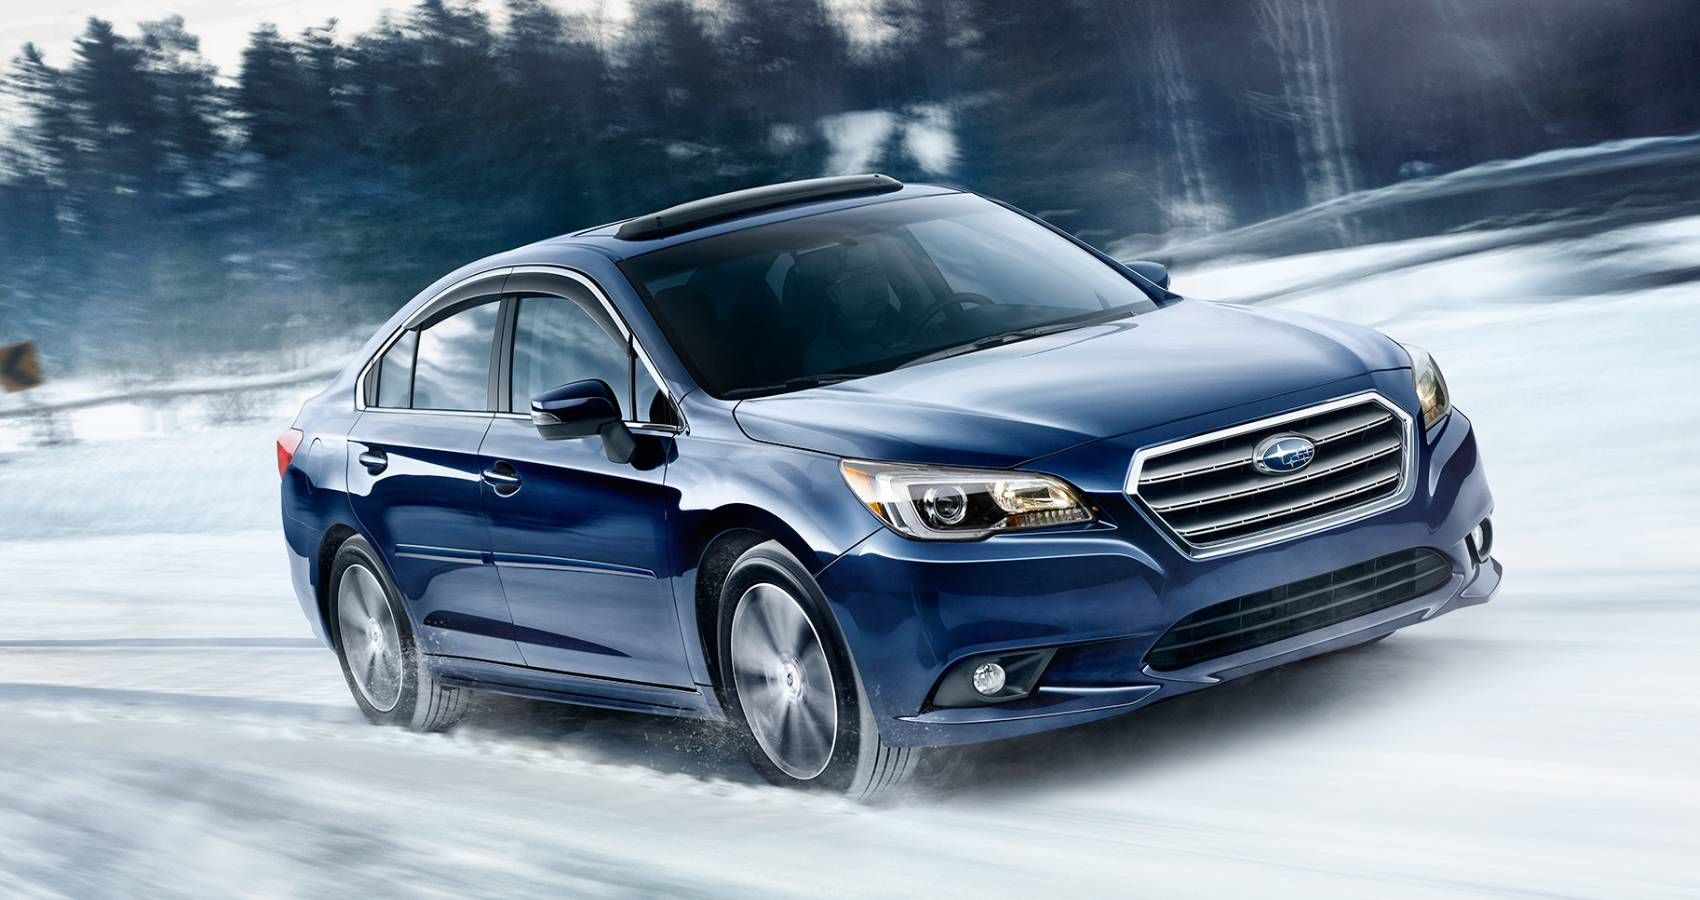 Subaru Legacy on Snow